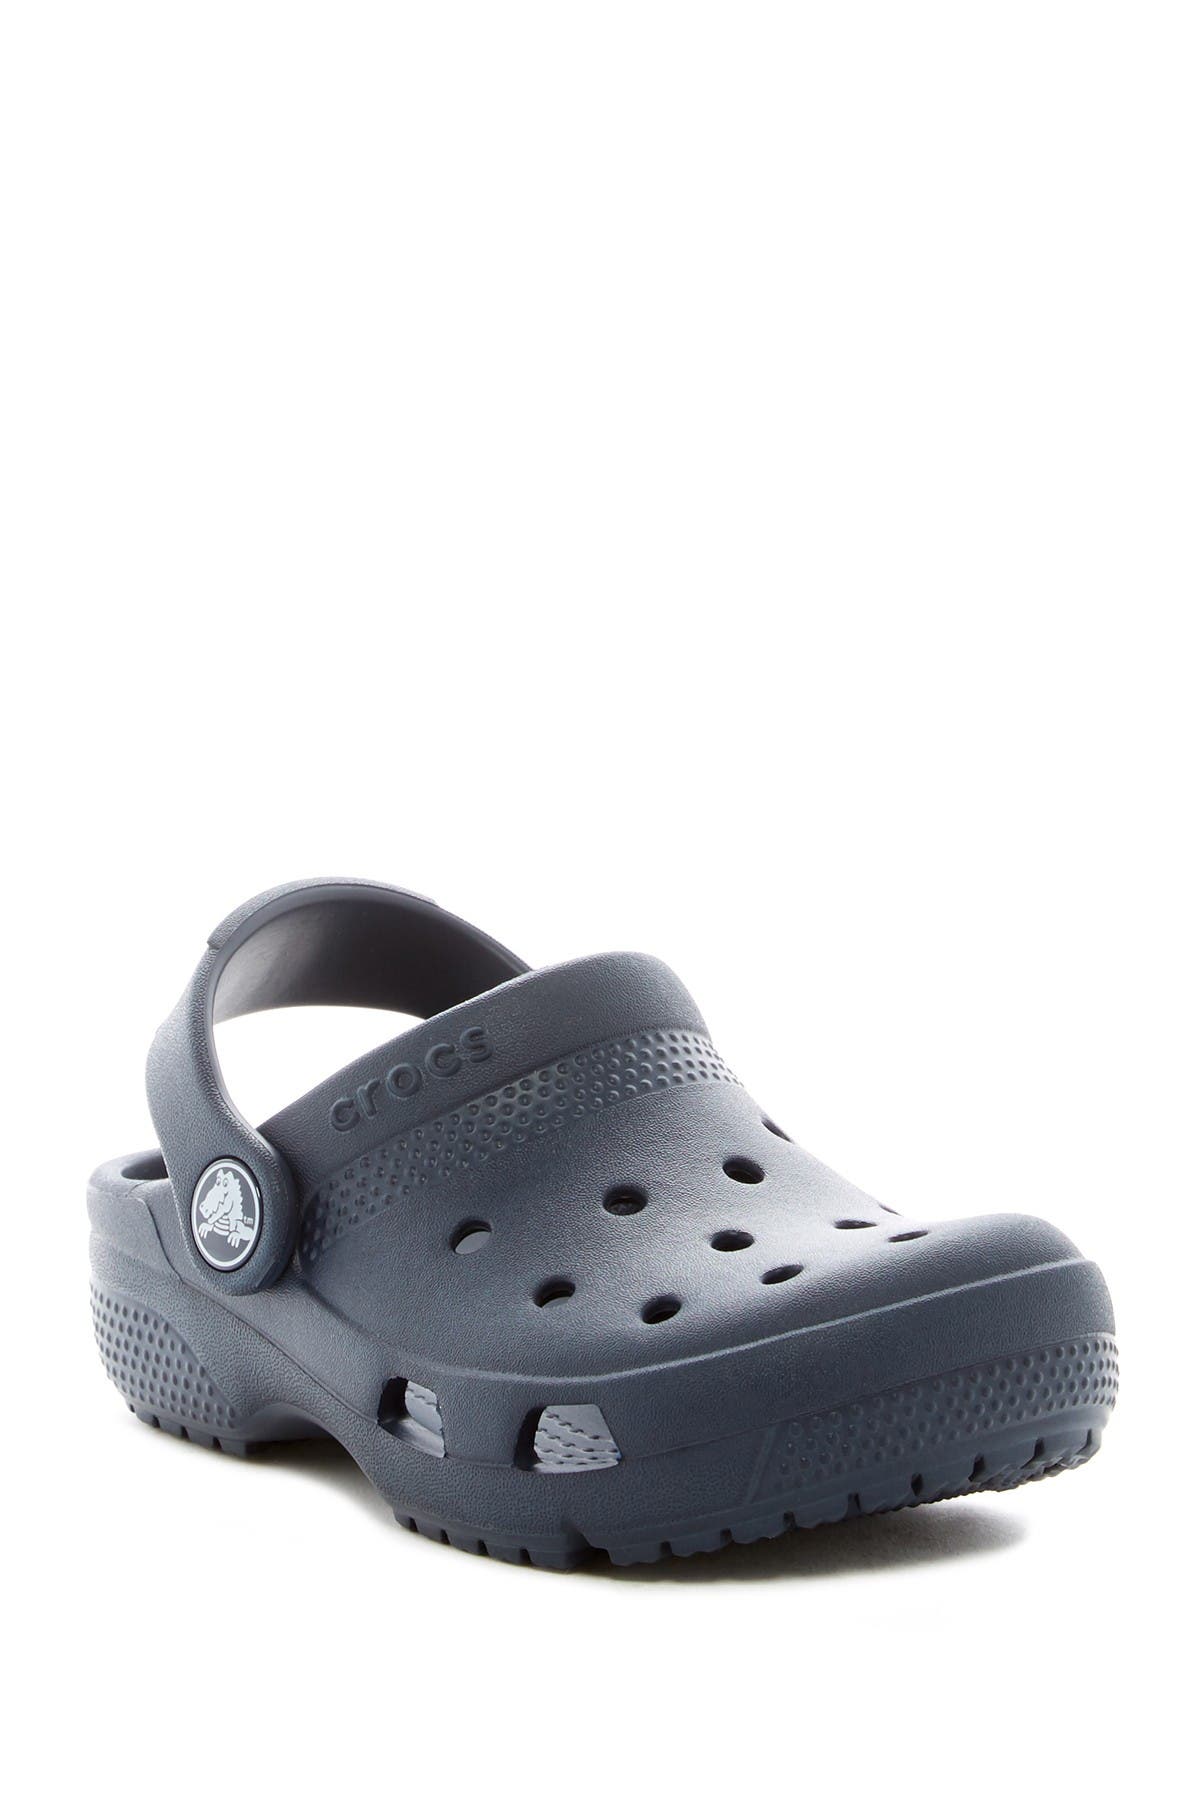 crocs maternity clog shoes slip on